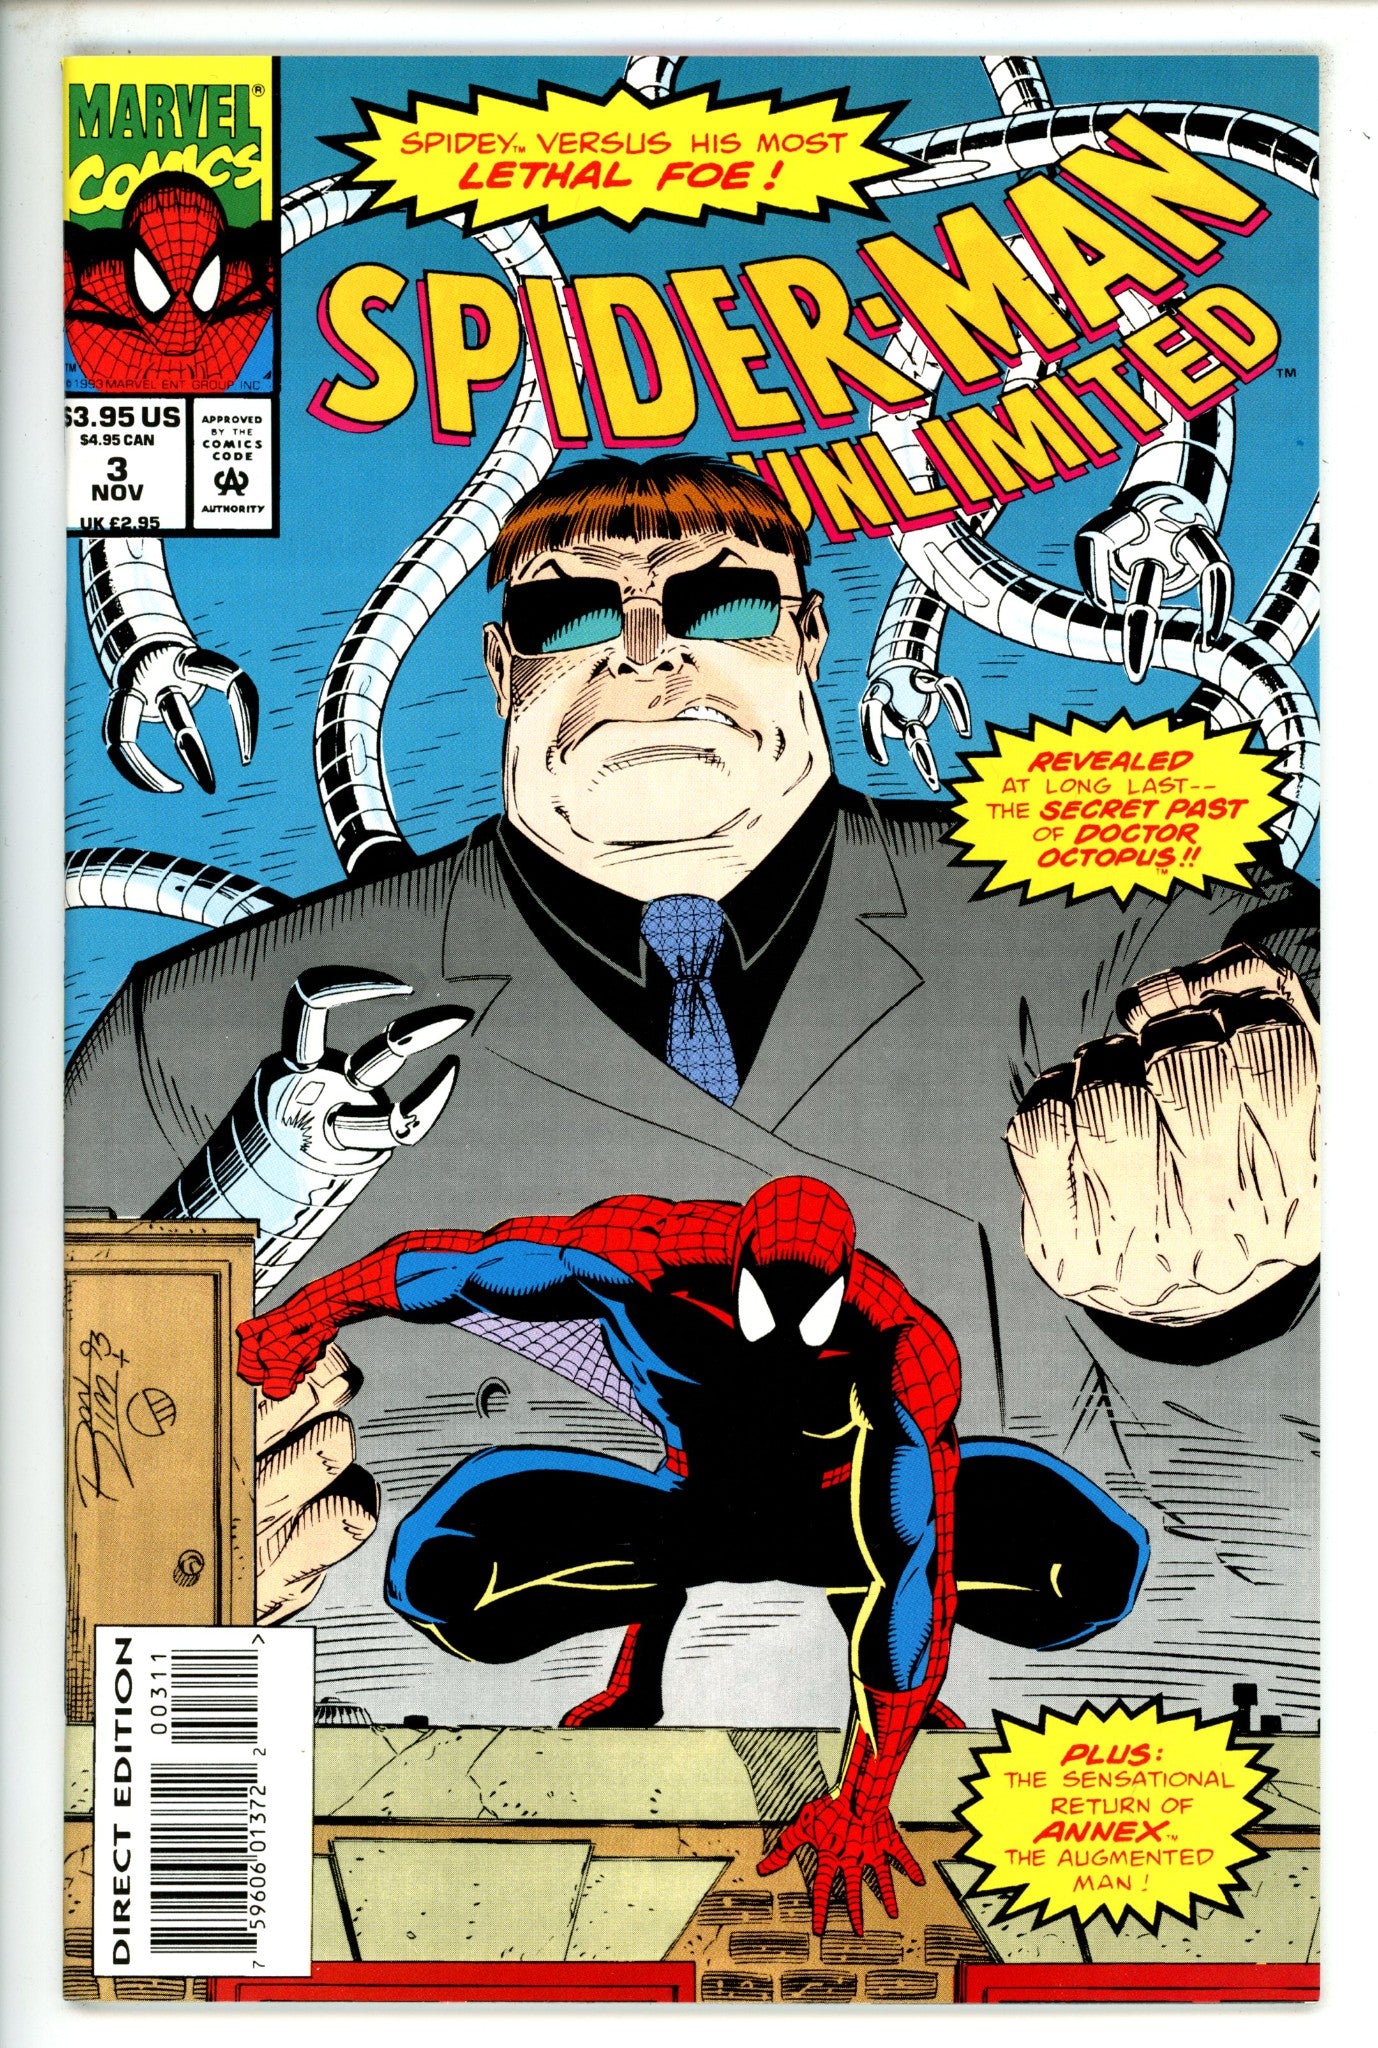 Spider-Man Unlimited Vol 1 3 (1993)